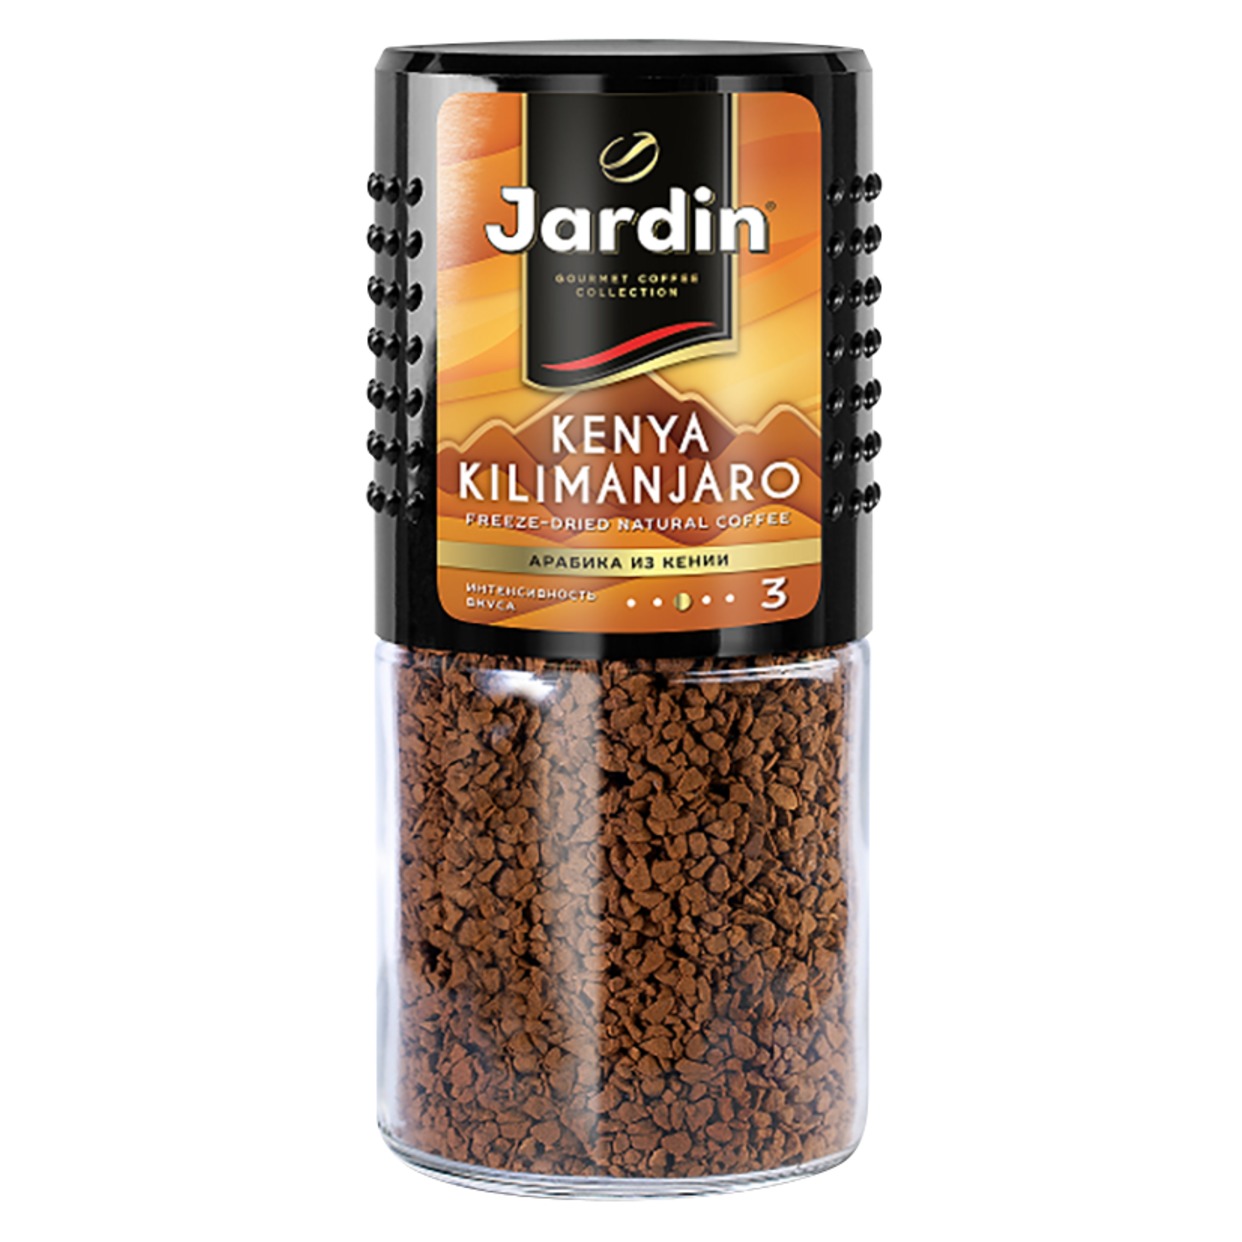 Кофе Jardin Kenya Kilimanjaro, растворимый, 95 г